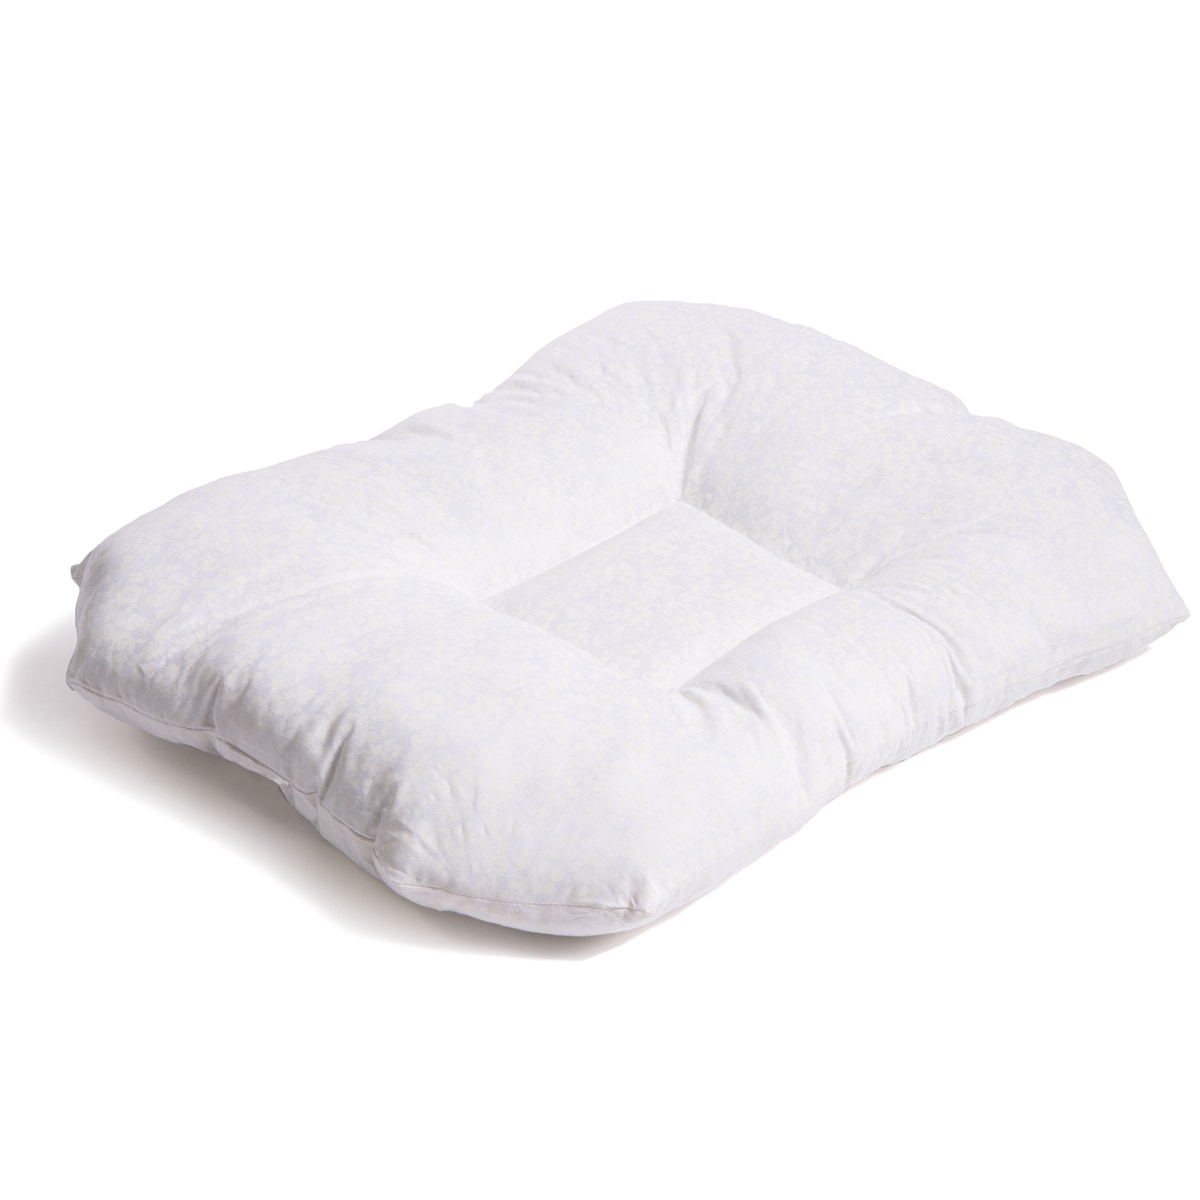 back sleeper pillow